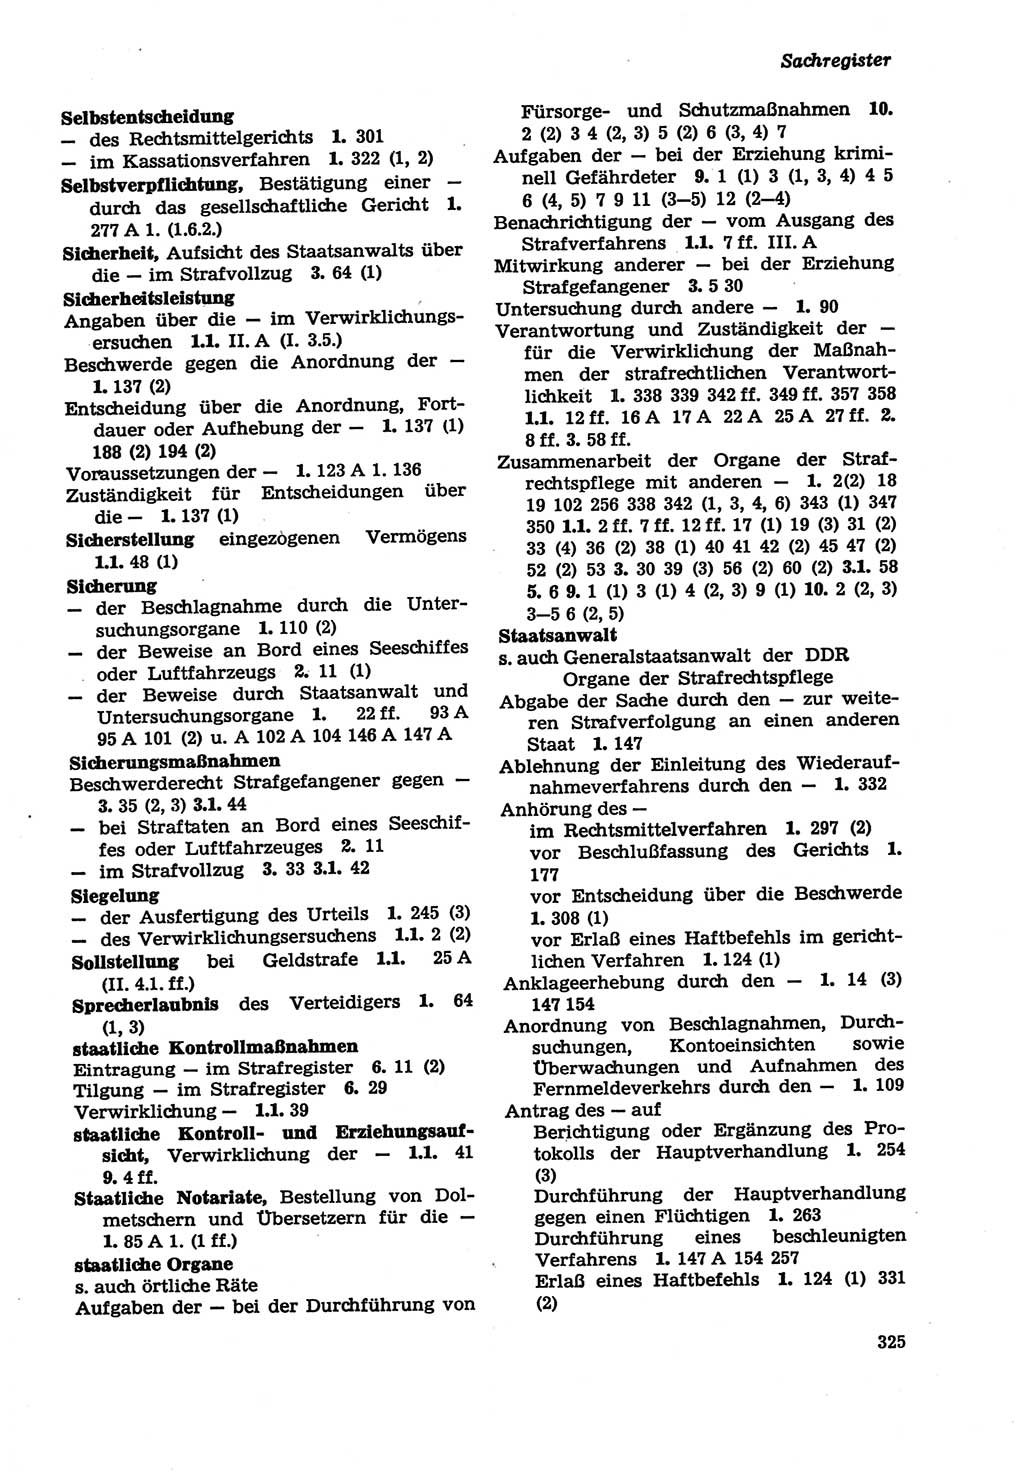 Strafprozeßordnung (StPO) der Deutschen Demokratischen Republik (DDR) sowie angrenzende Gesetze und Bestimmungen 1979, Seite 325 (StPO DDR Ges. Best. 1979, S. 325)